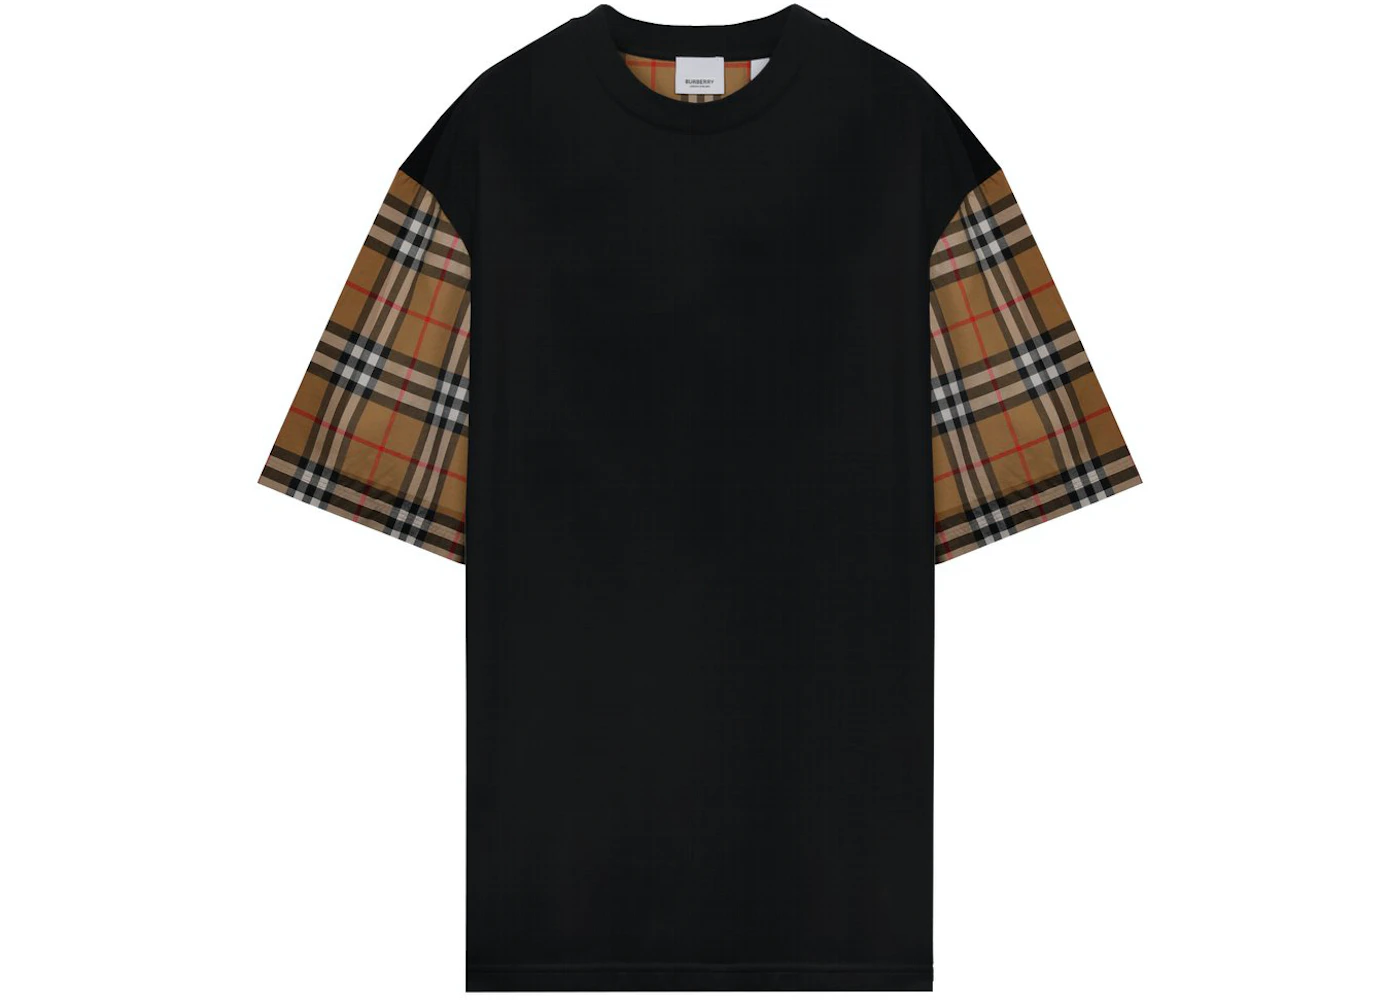 tommelfinger Vandret Andesbjergene Burberry Vintage Check Oversized T-shirt Black - SS21 Men's - US